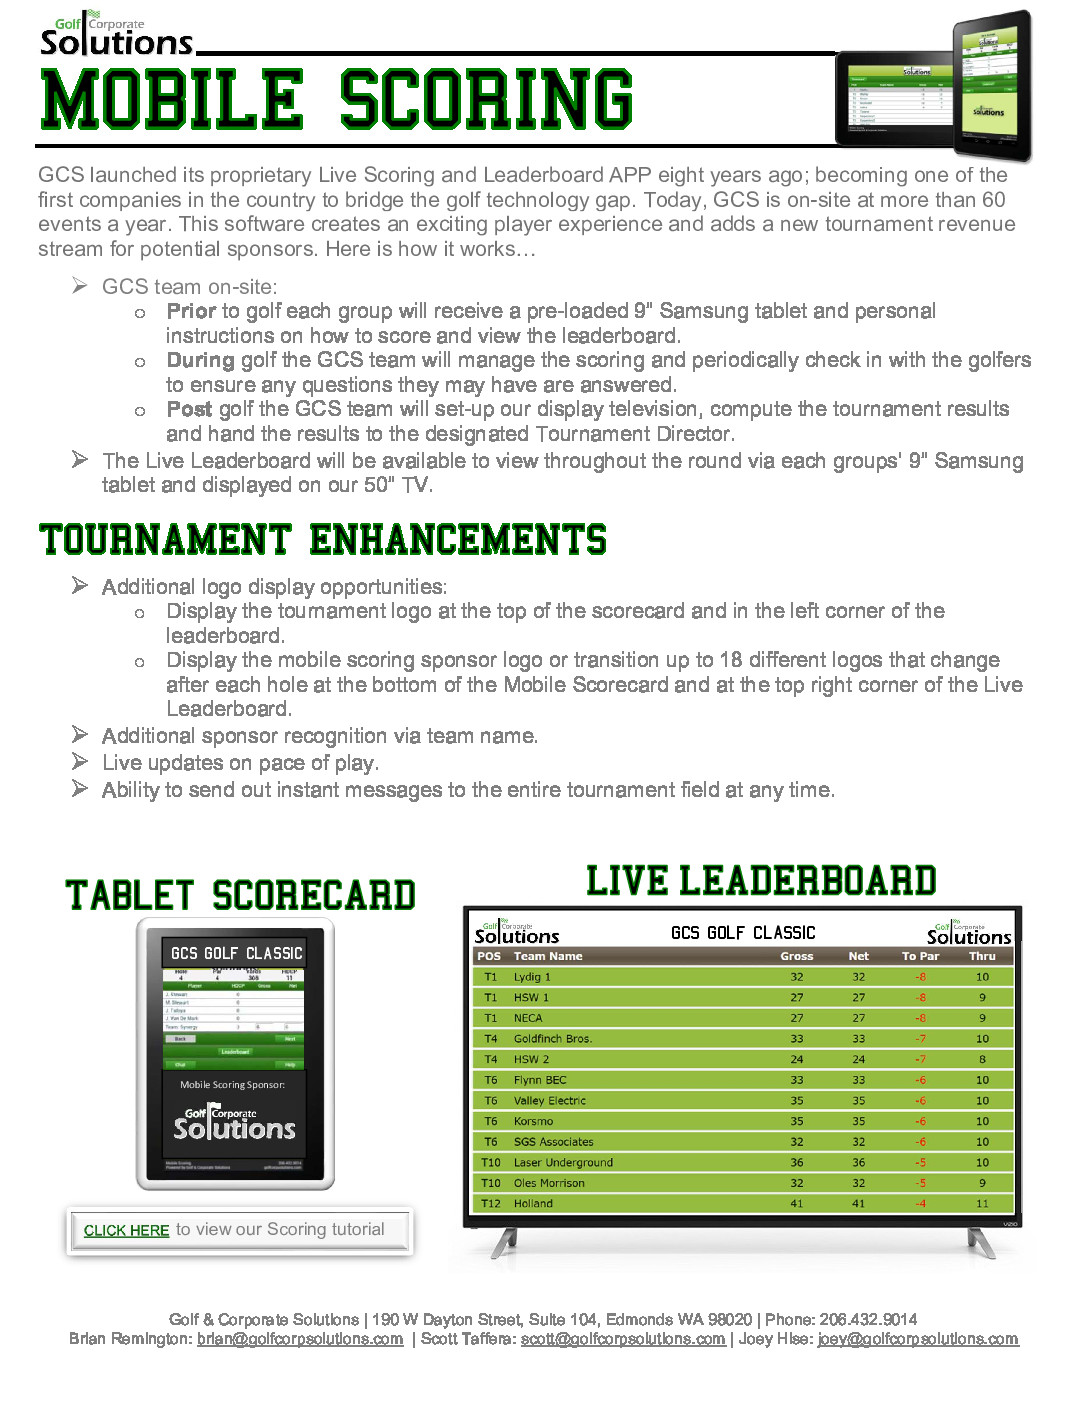 Mobile Solutions Flyer describing mobile scoring 